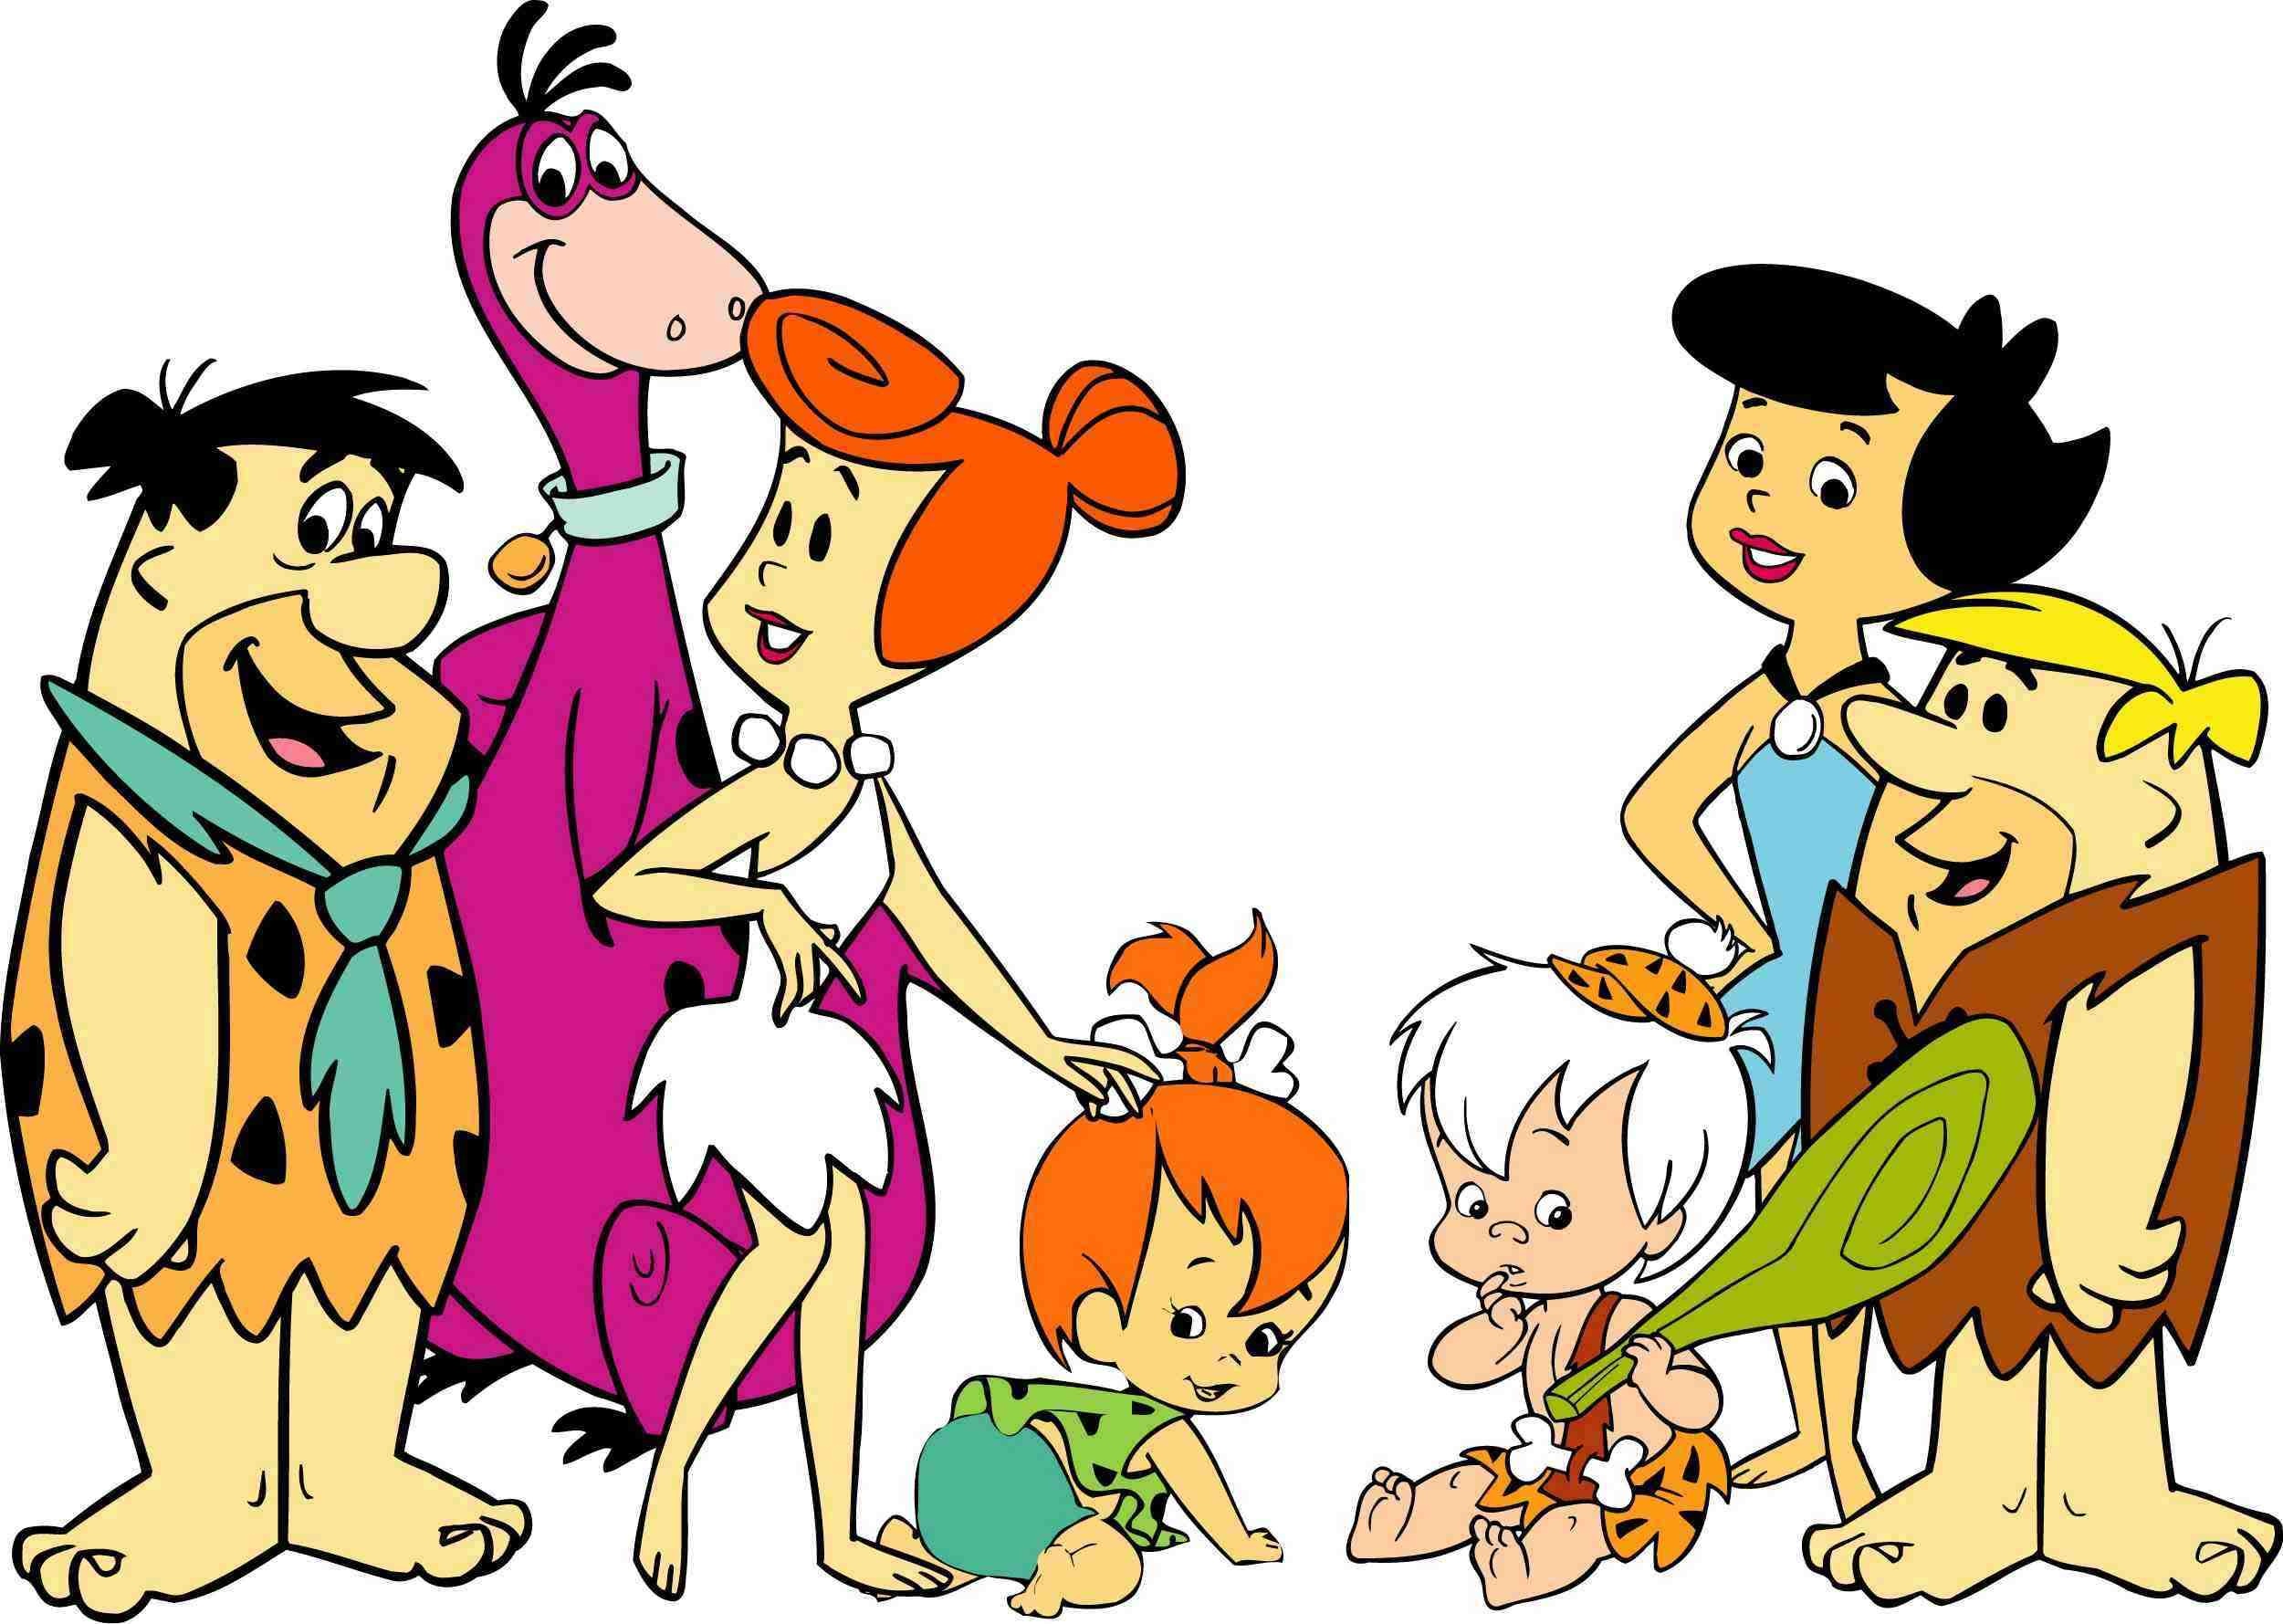 The Flintstones, Humorous wallpapers, HQ images, Cartoon characters, 2510x1780 HD Desktop